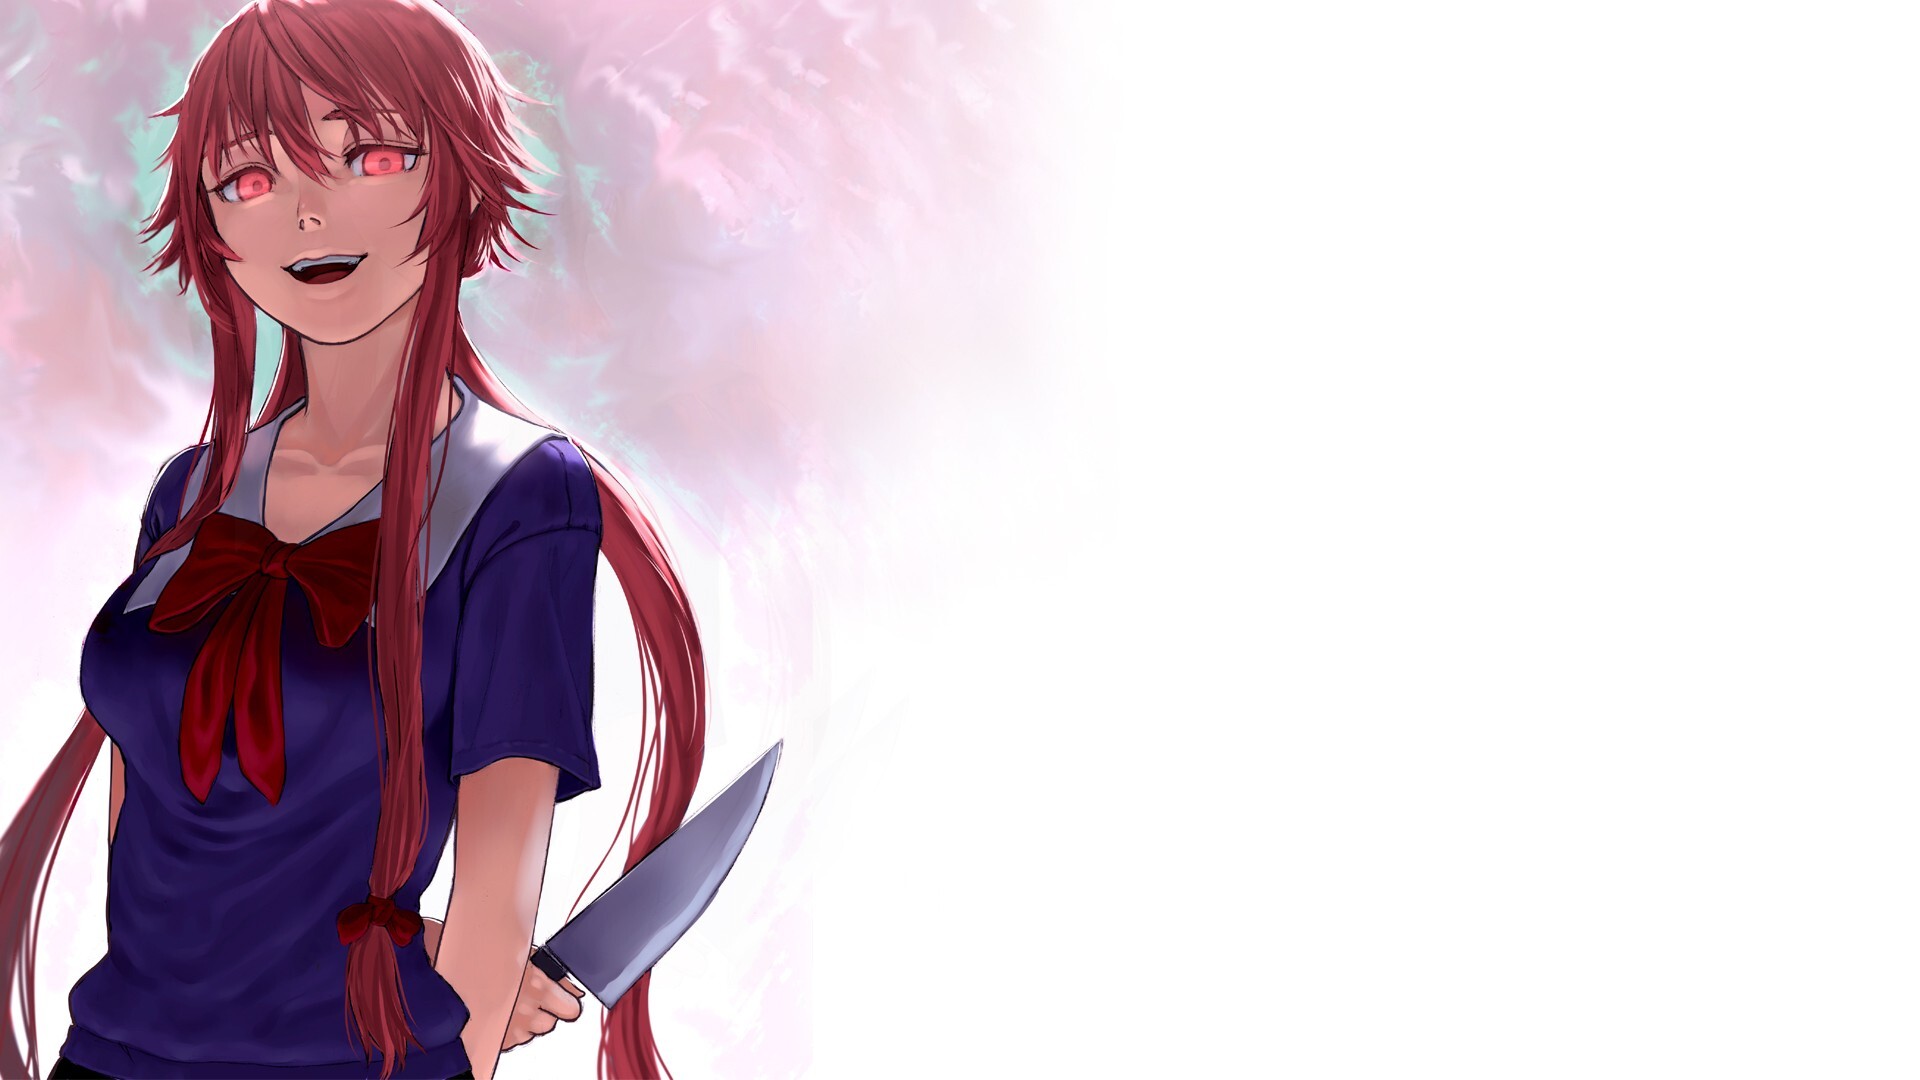 Gasai Yuno: Mirai Nikki, A psychopathic yandere, Fictional anime girl with the knife. 1920x1080 Full HD Wallpaper.